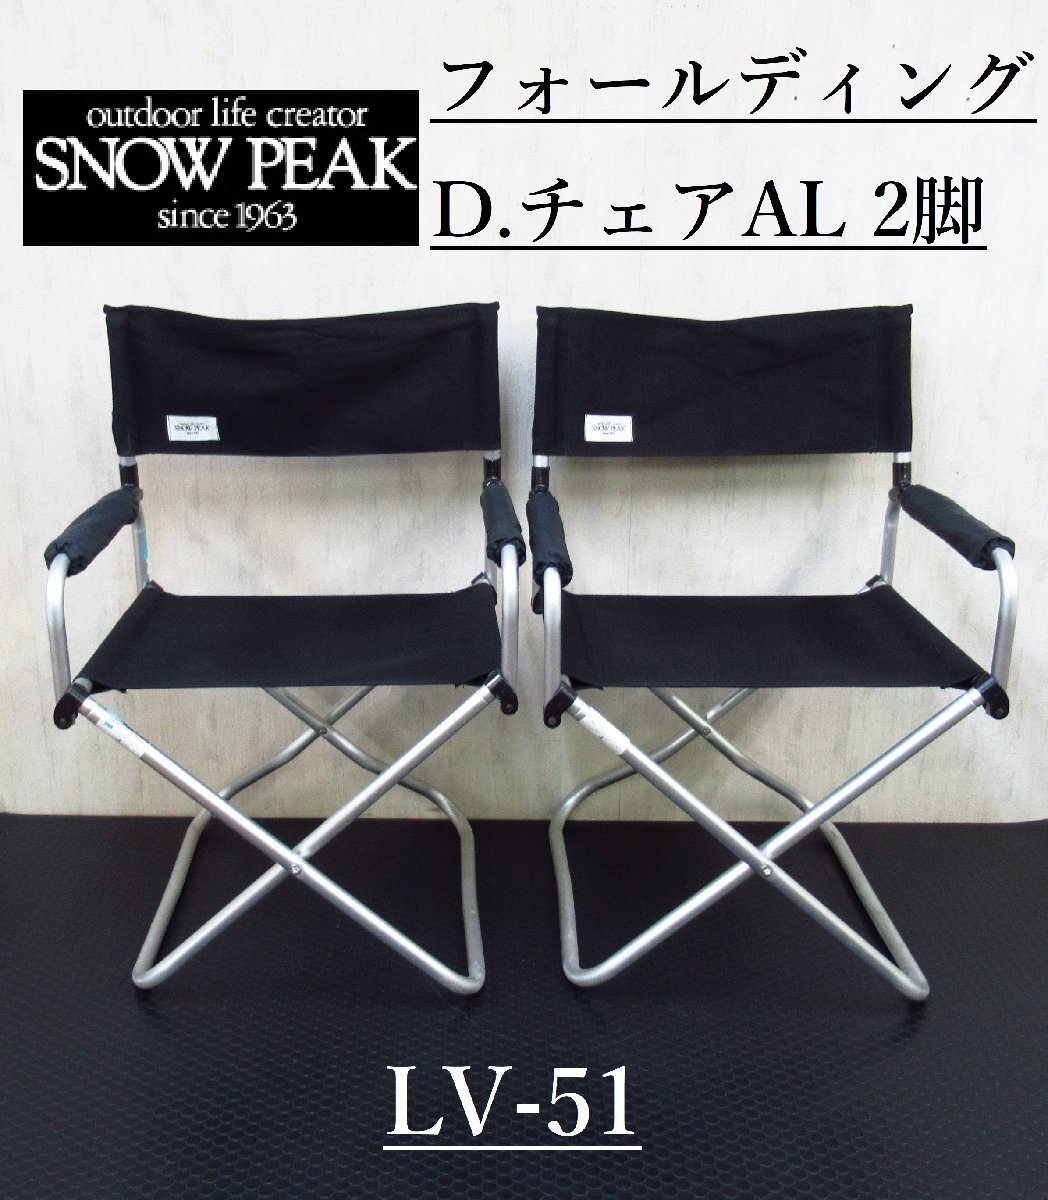 【2脚セット】 snow peak LV-51 フォールディングディレクターズチェア アルミ スノーピーク キャンプ テーブル/チェア / アウトドアの画像1